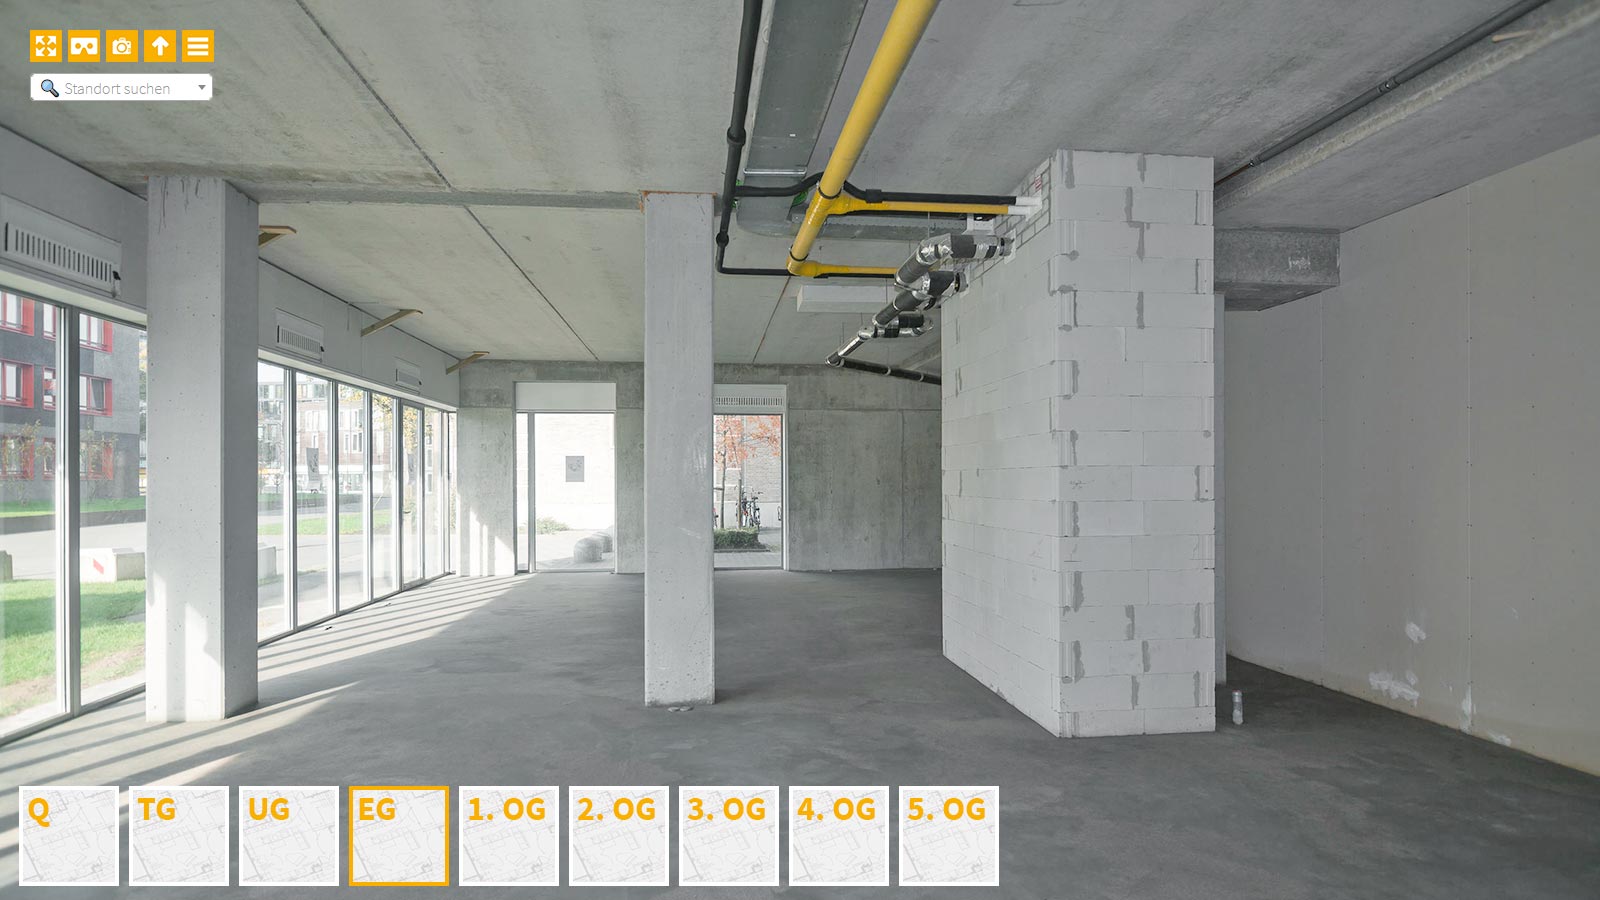 Baudokumentation 360 Grad bei gestörten Projekten in 


	


	


	


	


	


	


	


	


	


	Solingen









, Bilddokumentation als virtueller Rundgang